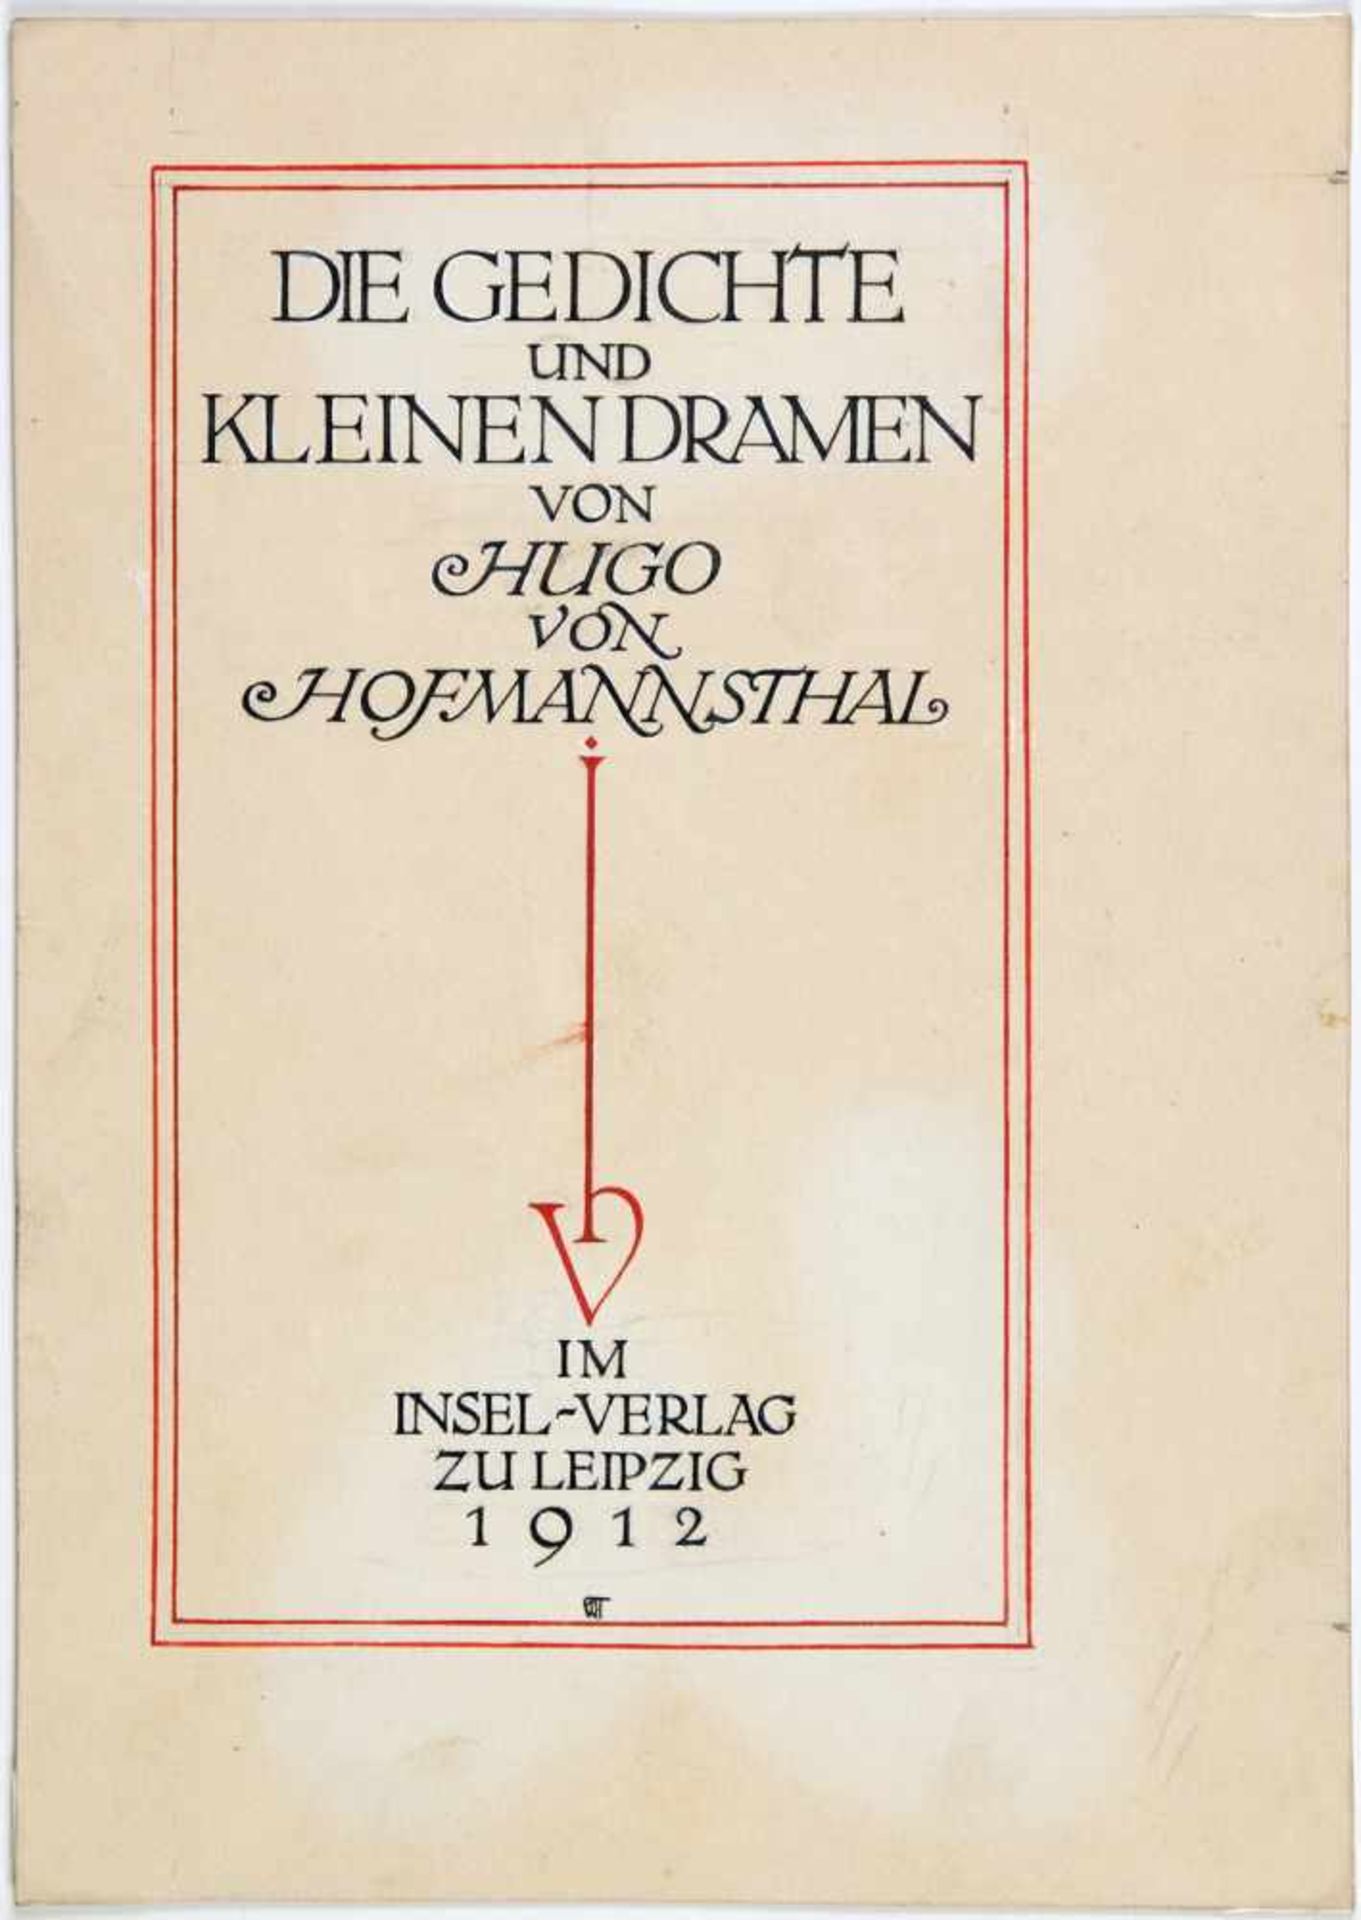 Insel Verlag - Walter Tiemann. Geschichte der Abderiten. Tuschzeichnung und zweifarbige - Image 3 of 3